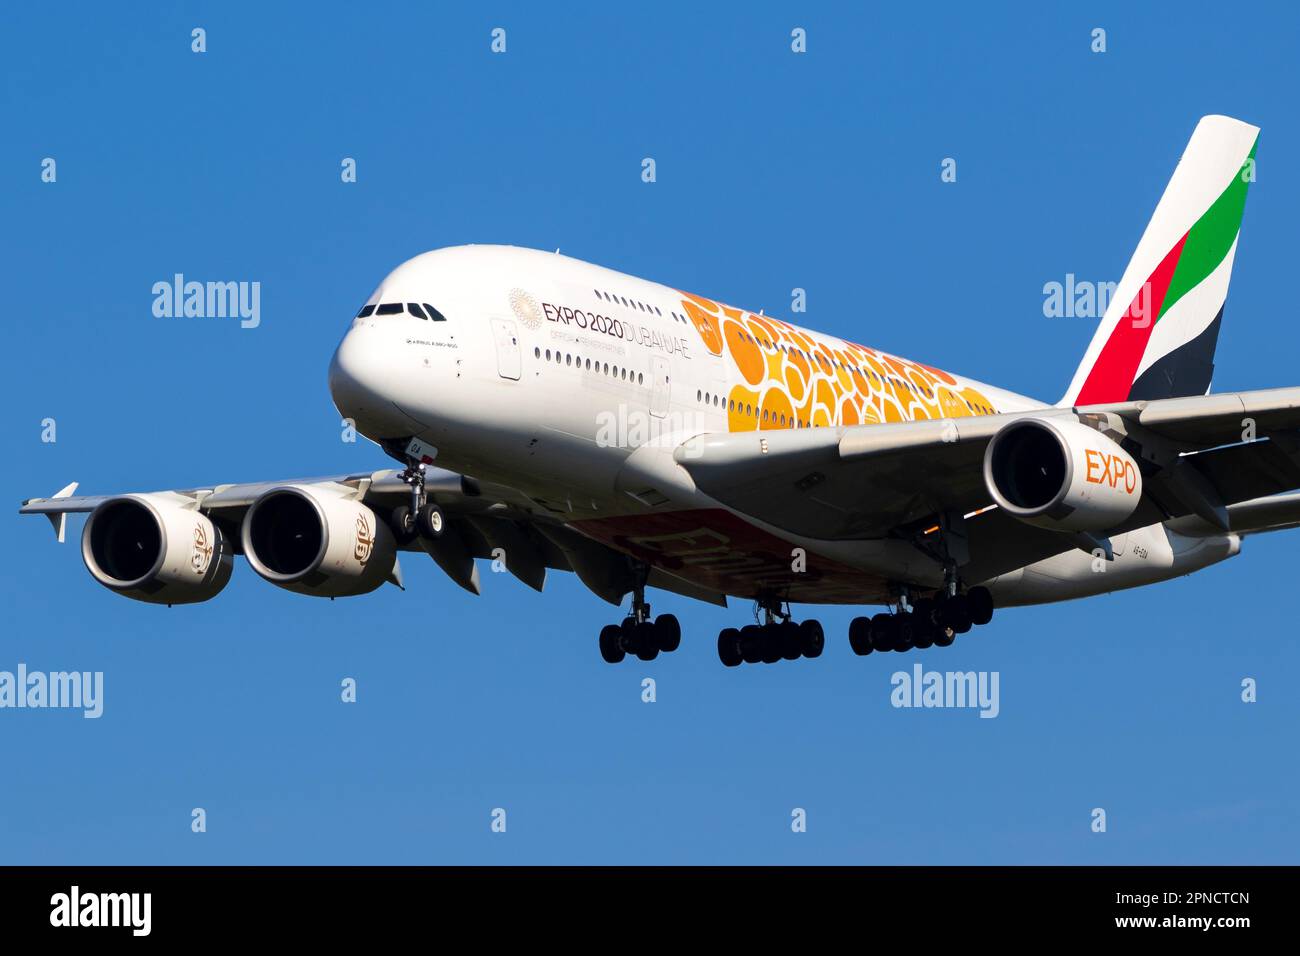 Emirates Airlines Airbus A380 aereo di linea passeggeri sull'aeroporto di Francoforte. Francoforte, Germania - 11 settembre 2019: Foto Stock